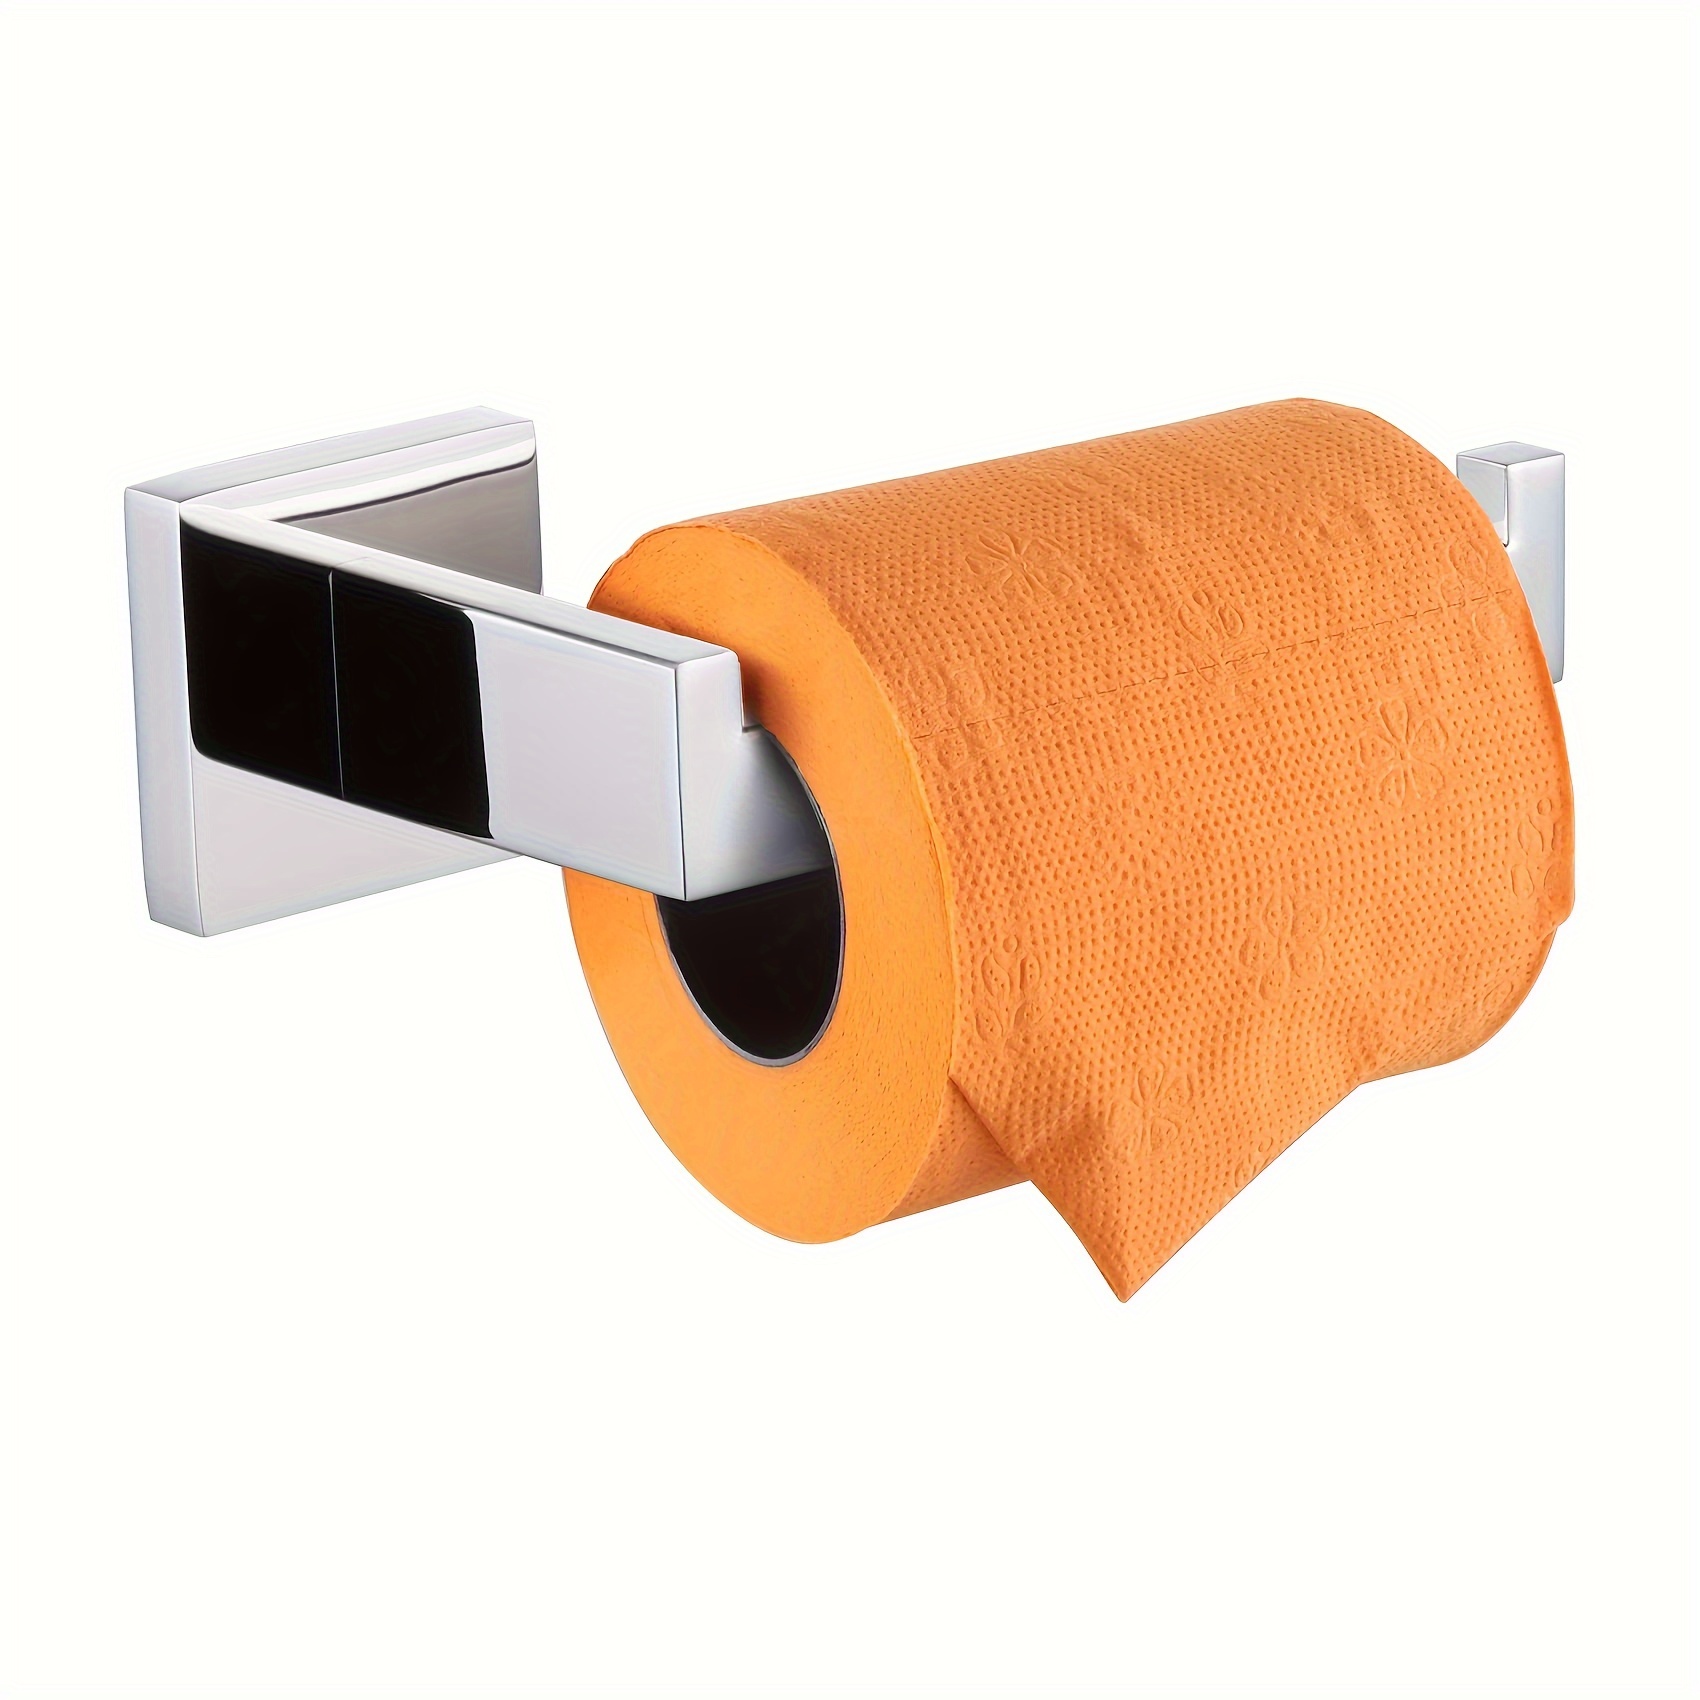 6-Roll Toilet Paper Storage Holder